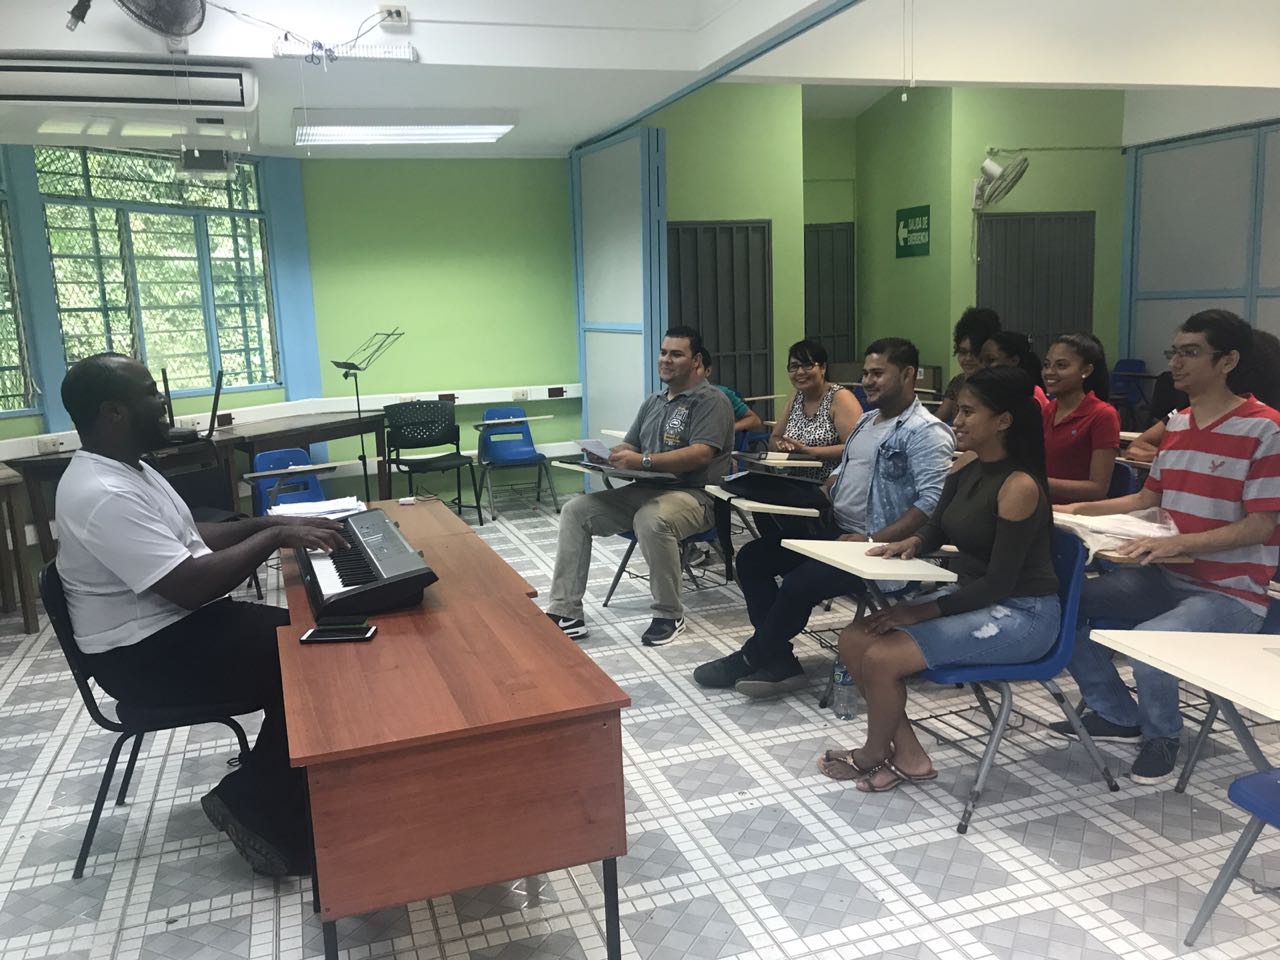 Desde un aula de la Sede del Caribe, quienes integran Limón Coral preparan sus voces para rendir tributo a la provincia. Foto: cortesía del proyecto.